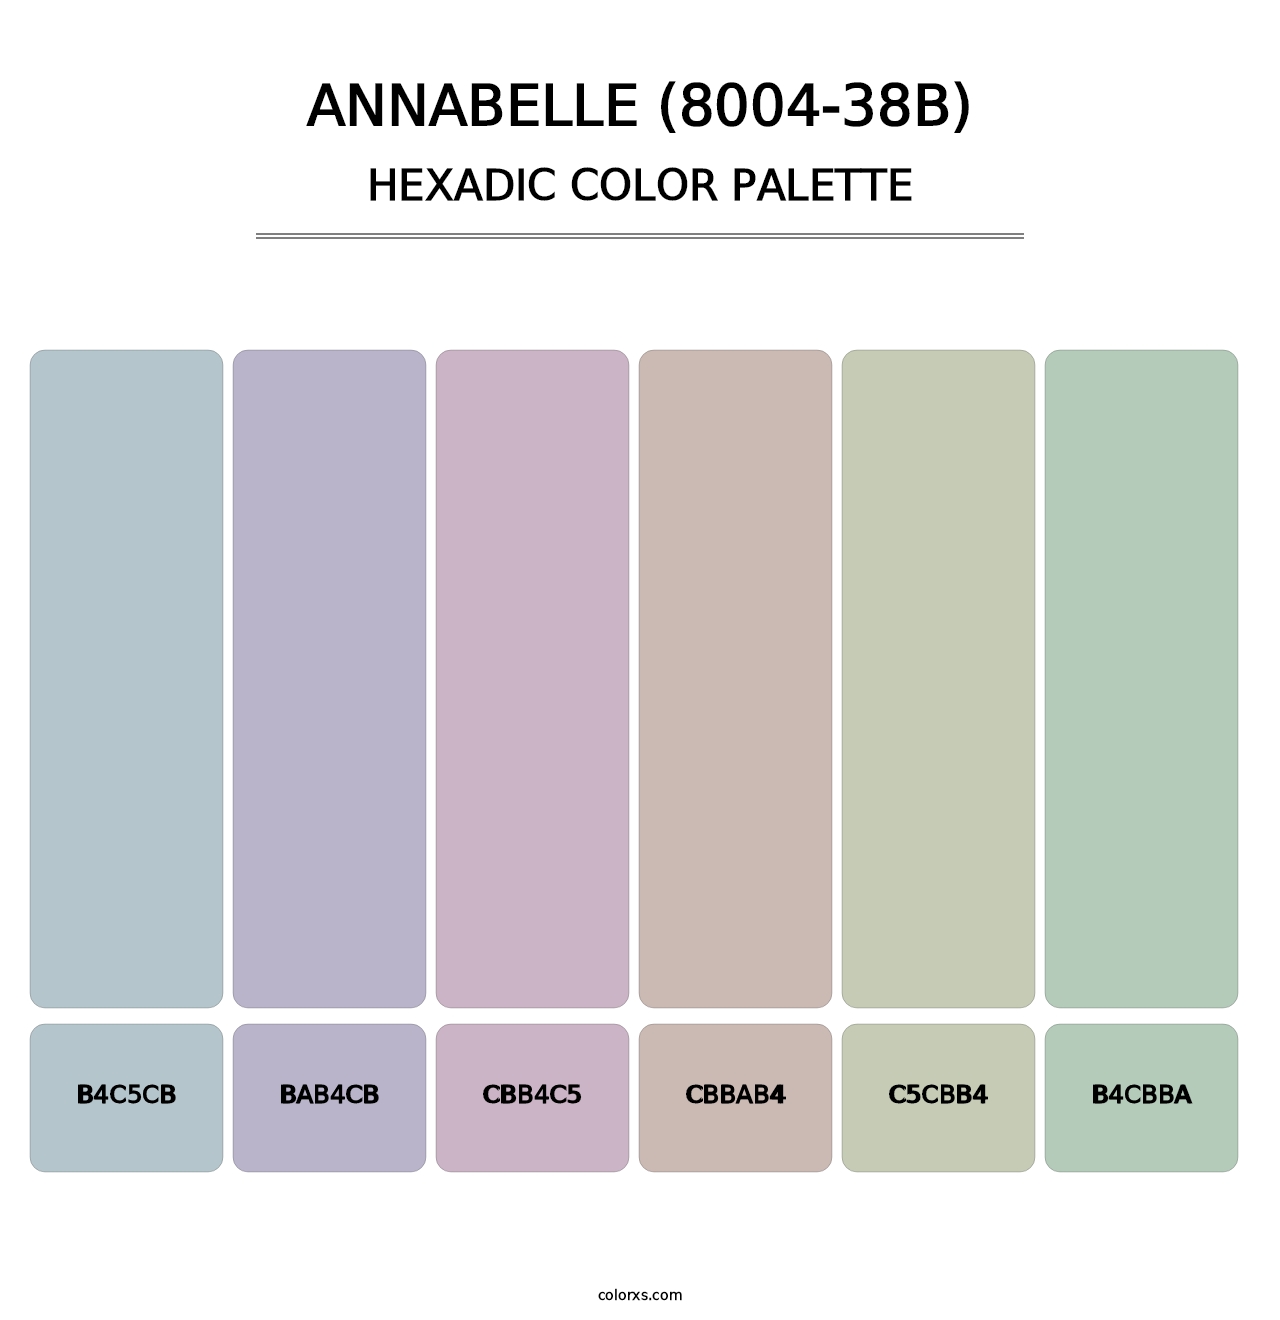 Annabelle (8004-38B) - Hexadic Color Palette